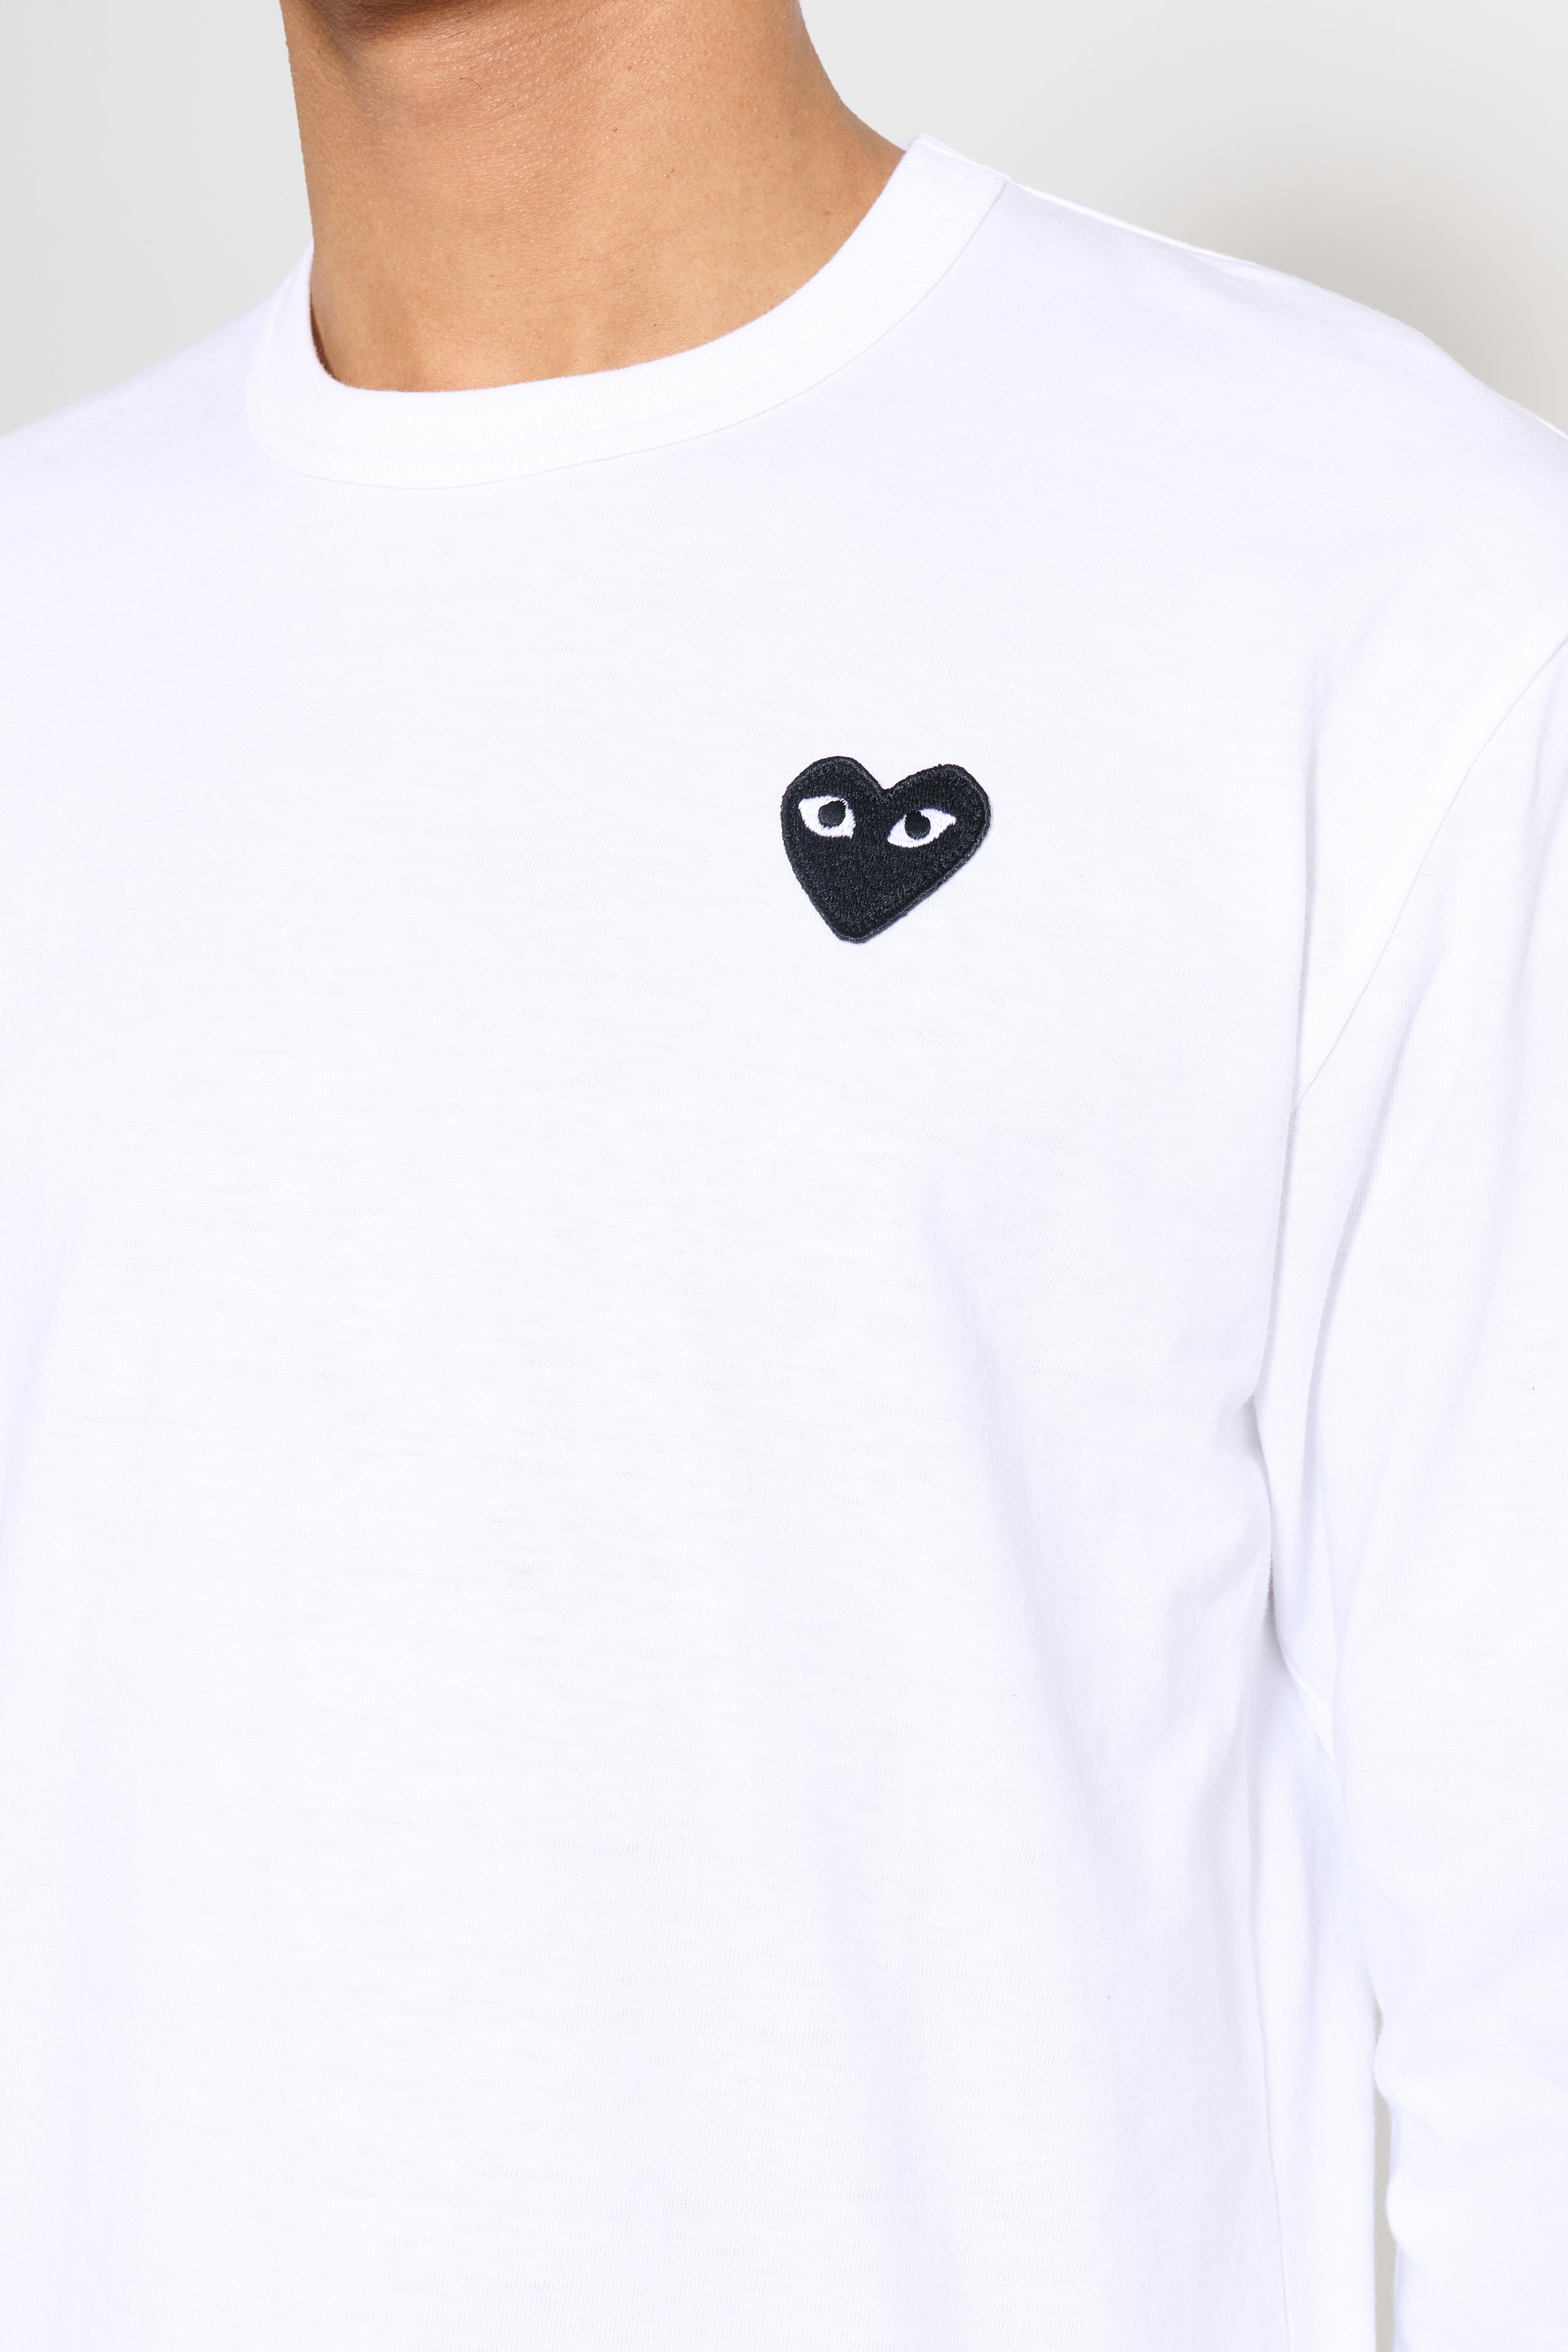 Comme des Garçons Play Small Heart LS T-shirt White